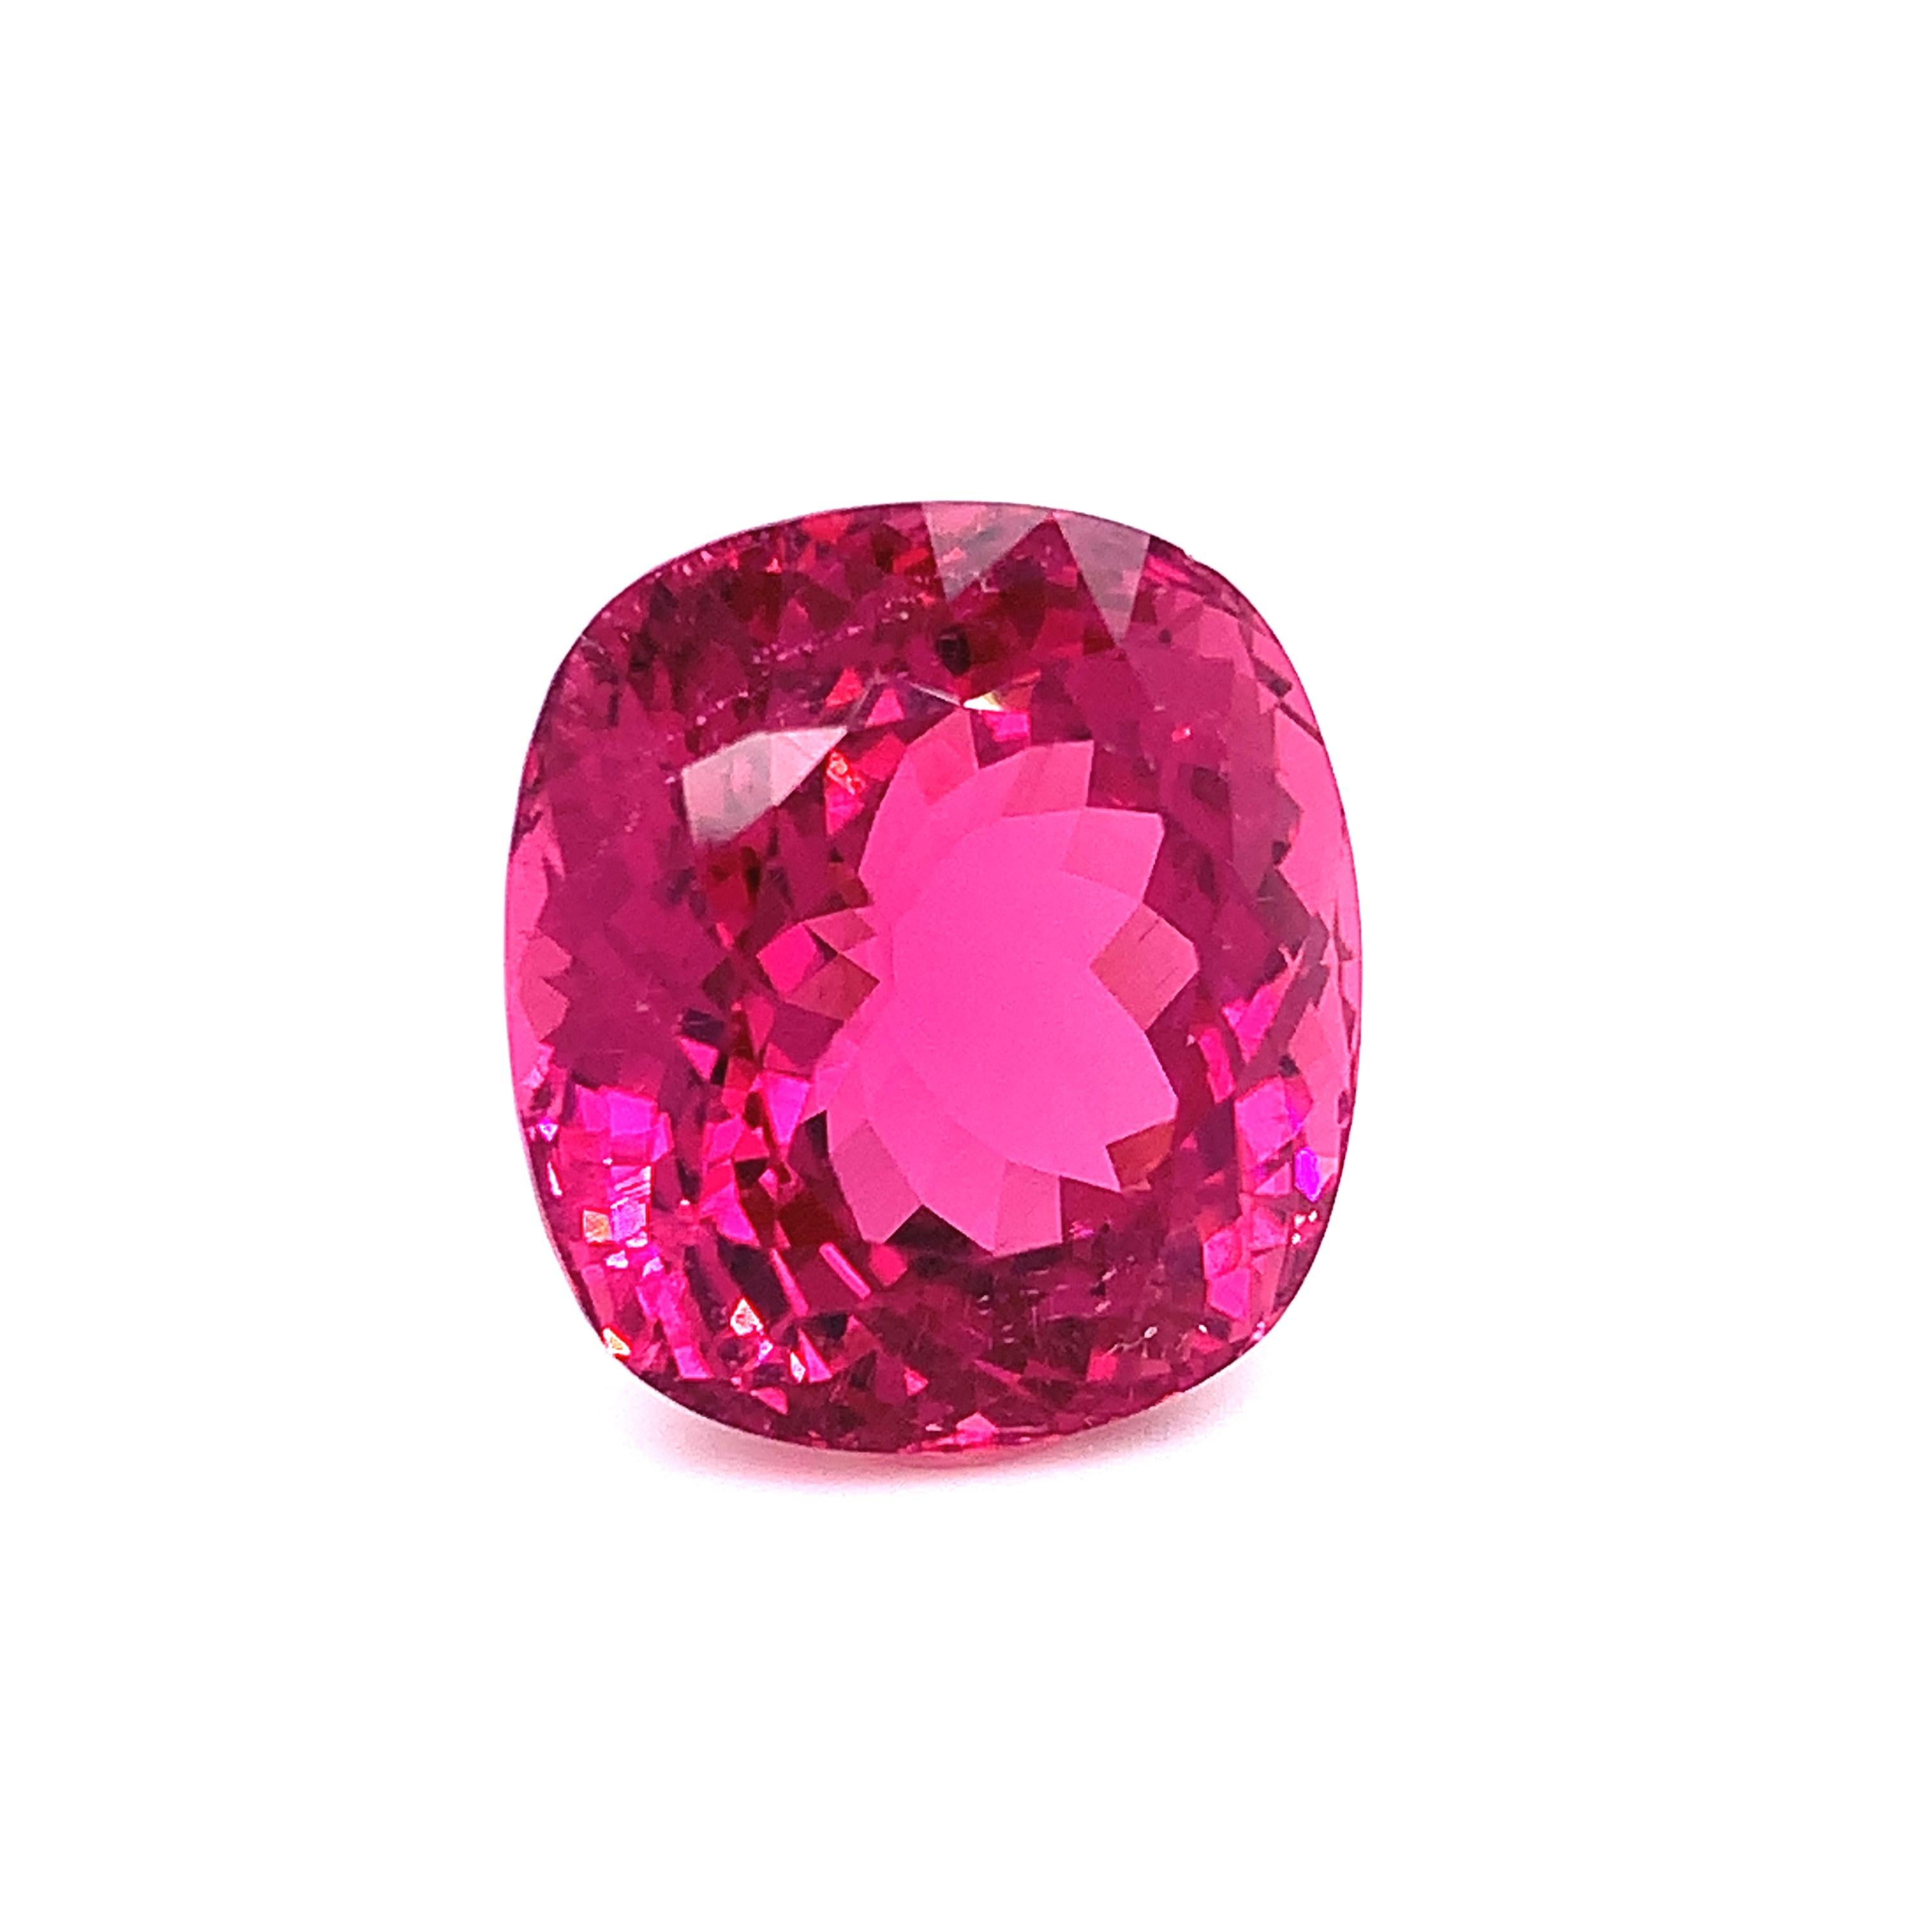 44.97 Carat Purple Pink Tourmaline, Loose Gemstone, GIA Certified 6